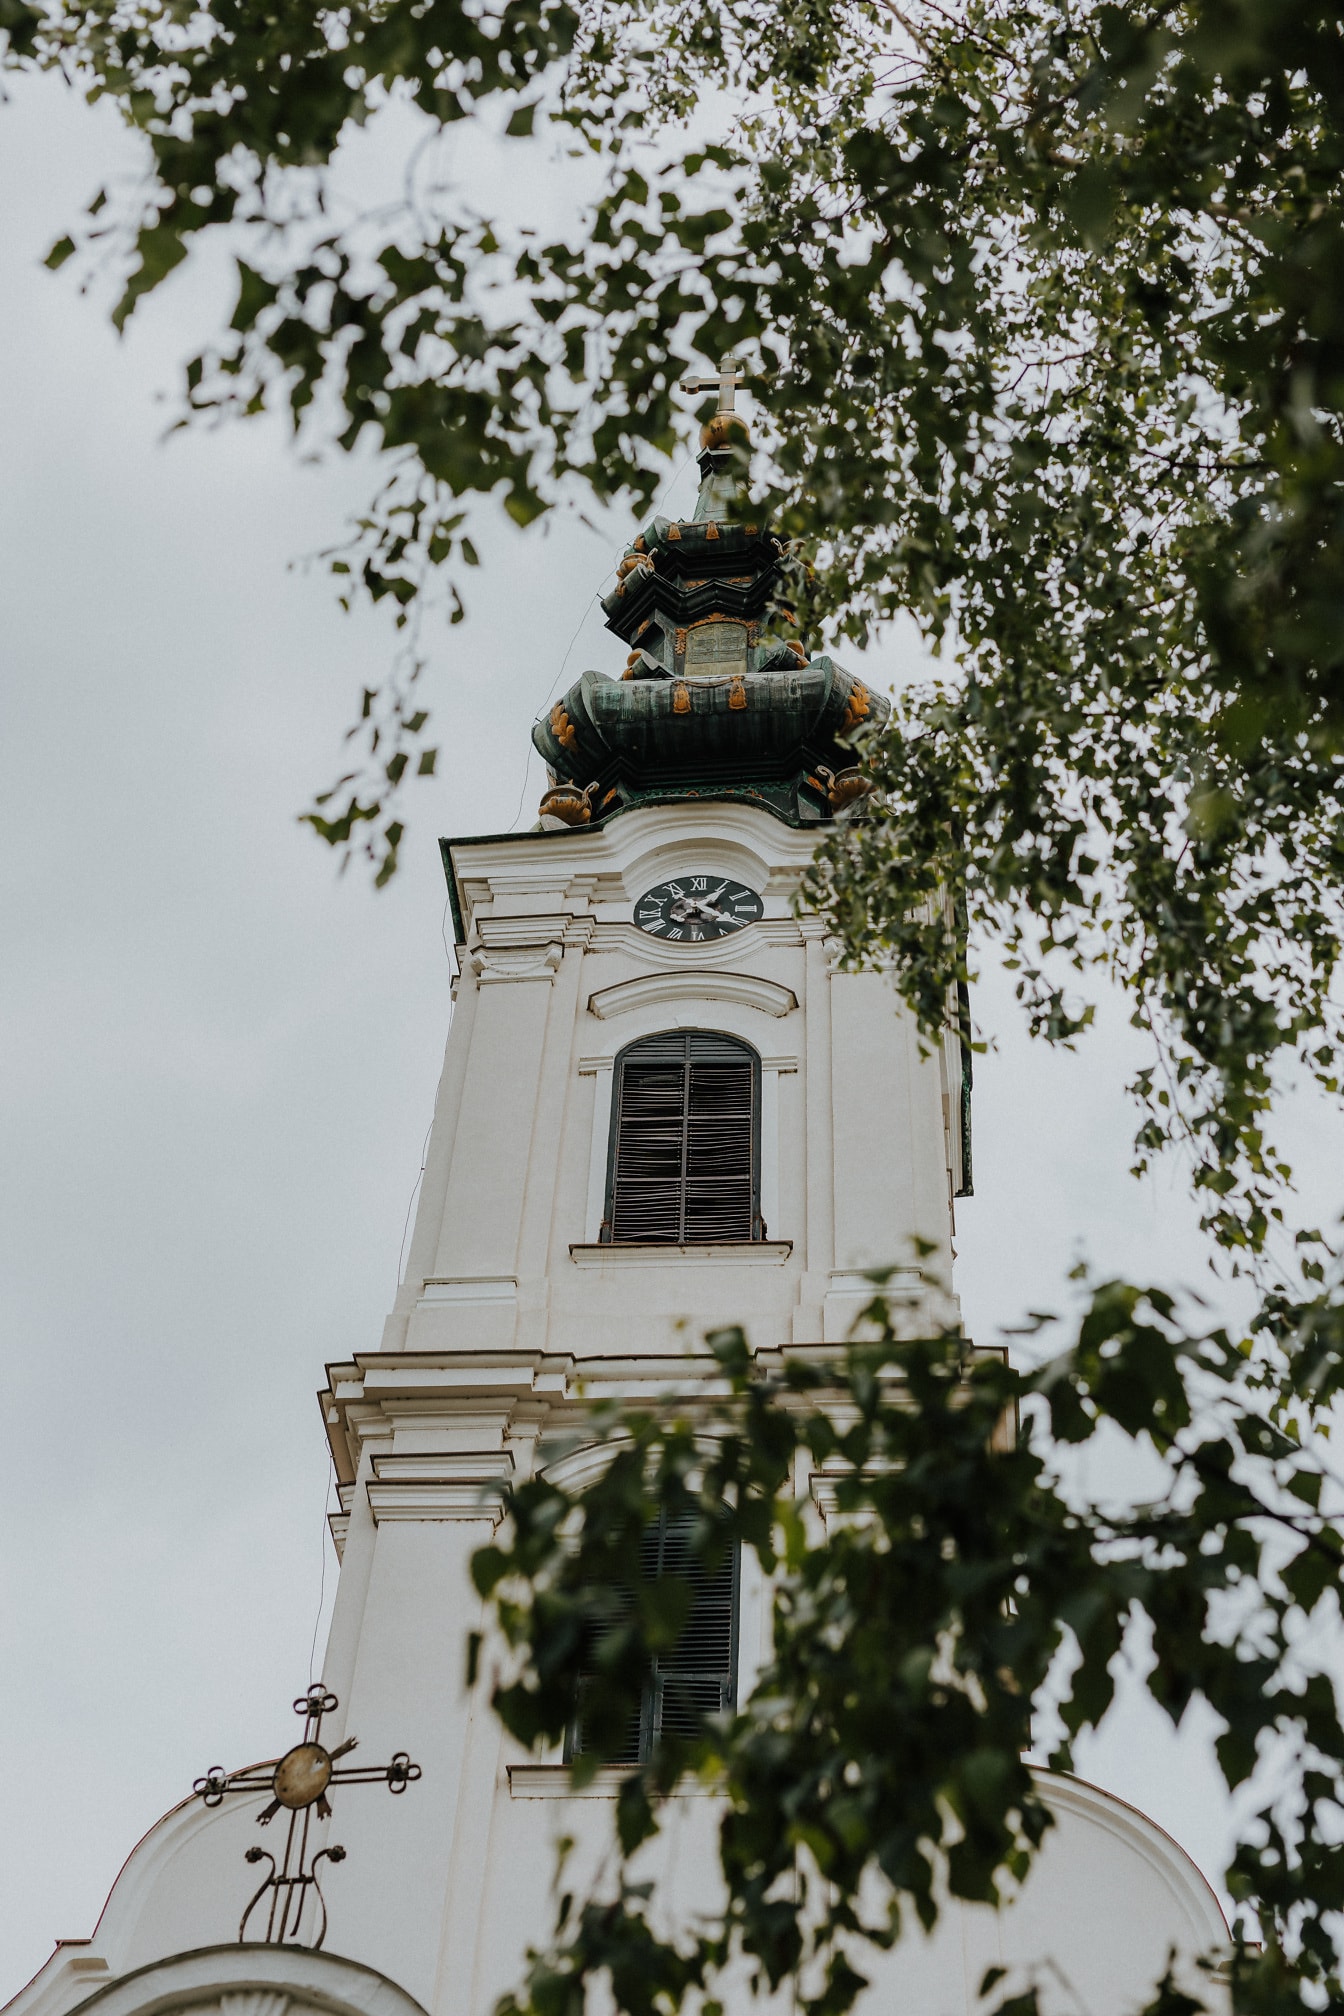 Turnul bisericii ortodoxe albe de culoare verde închis din Serbia